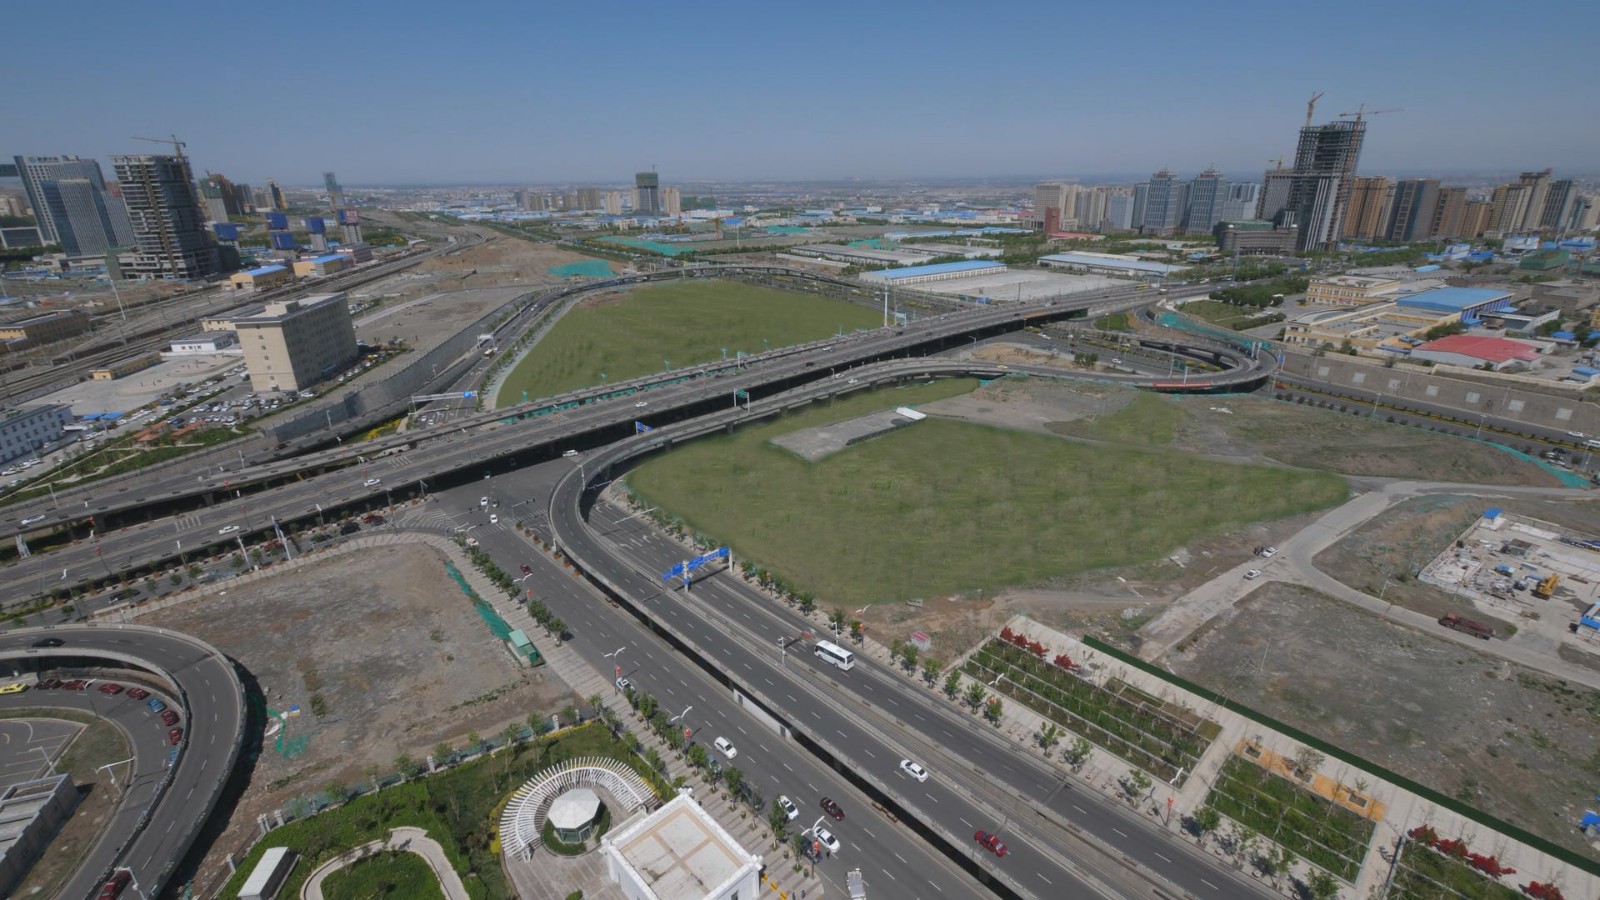 新疆维泰开发股份有限公司承建的”乌鲁木齐新客站北区配套设施建设工程”实景照片